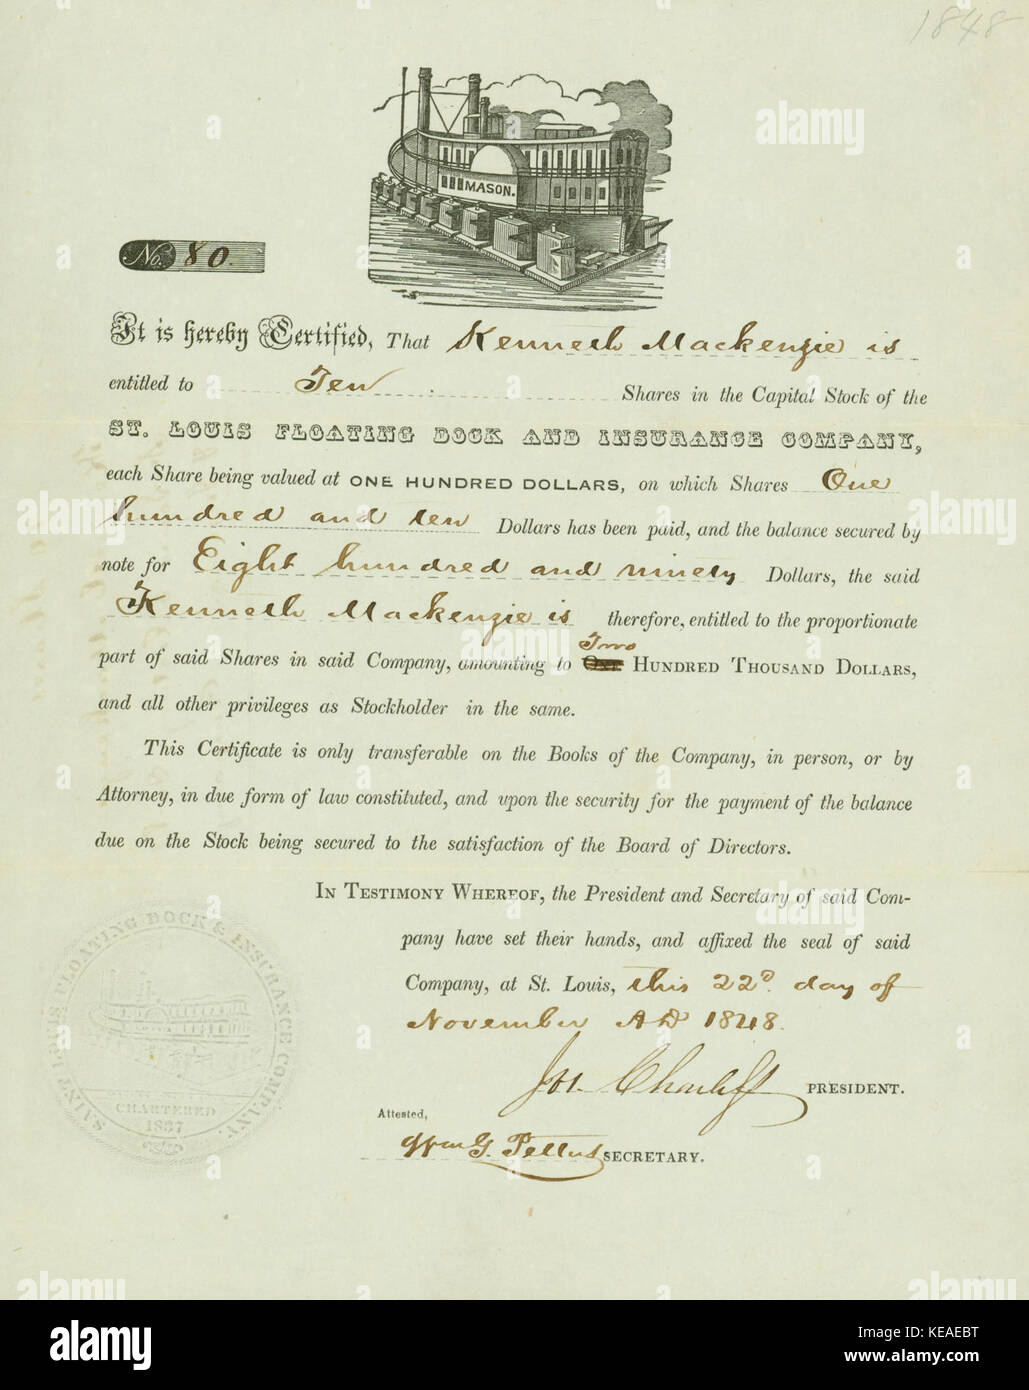 Lieferbar Zertifikat in der St. Louis Schwimmdocks und Versicherung zu Kenneth Mackenzie, unterschrieben von Joseph Charless und von William G. Pettus, 22. November 1848 Zeuge ausgestellt Stockfoto